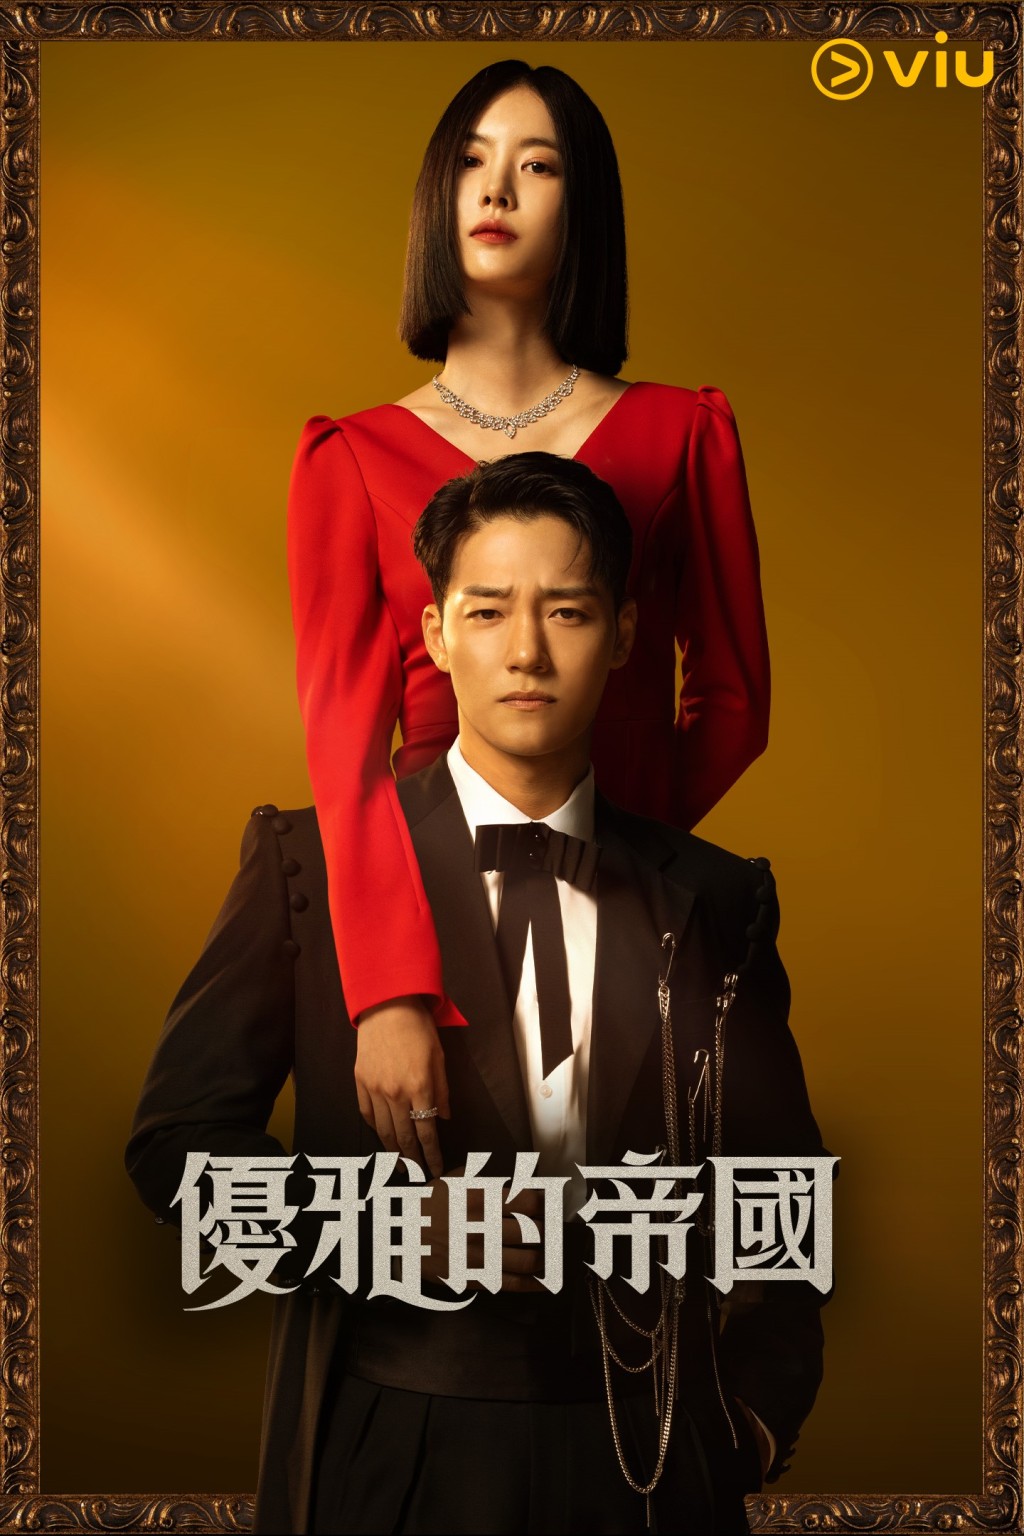 全新百集日日连续剧《优雅的帝国》逢星期二至六下午在「黄Viu」上架。